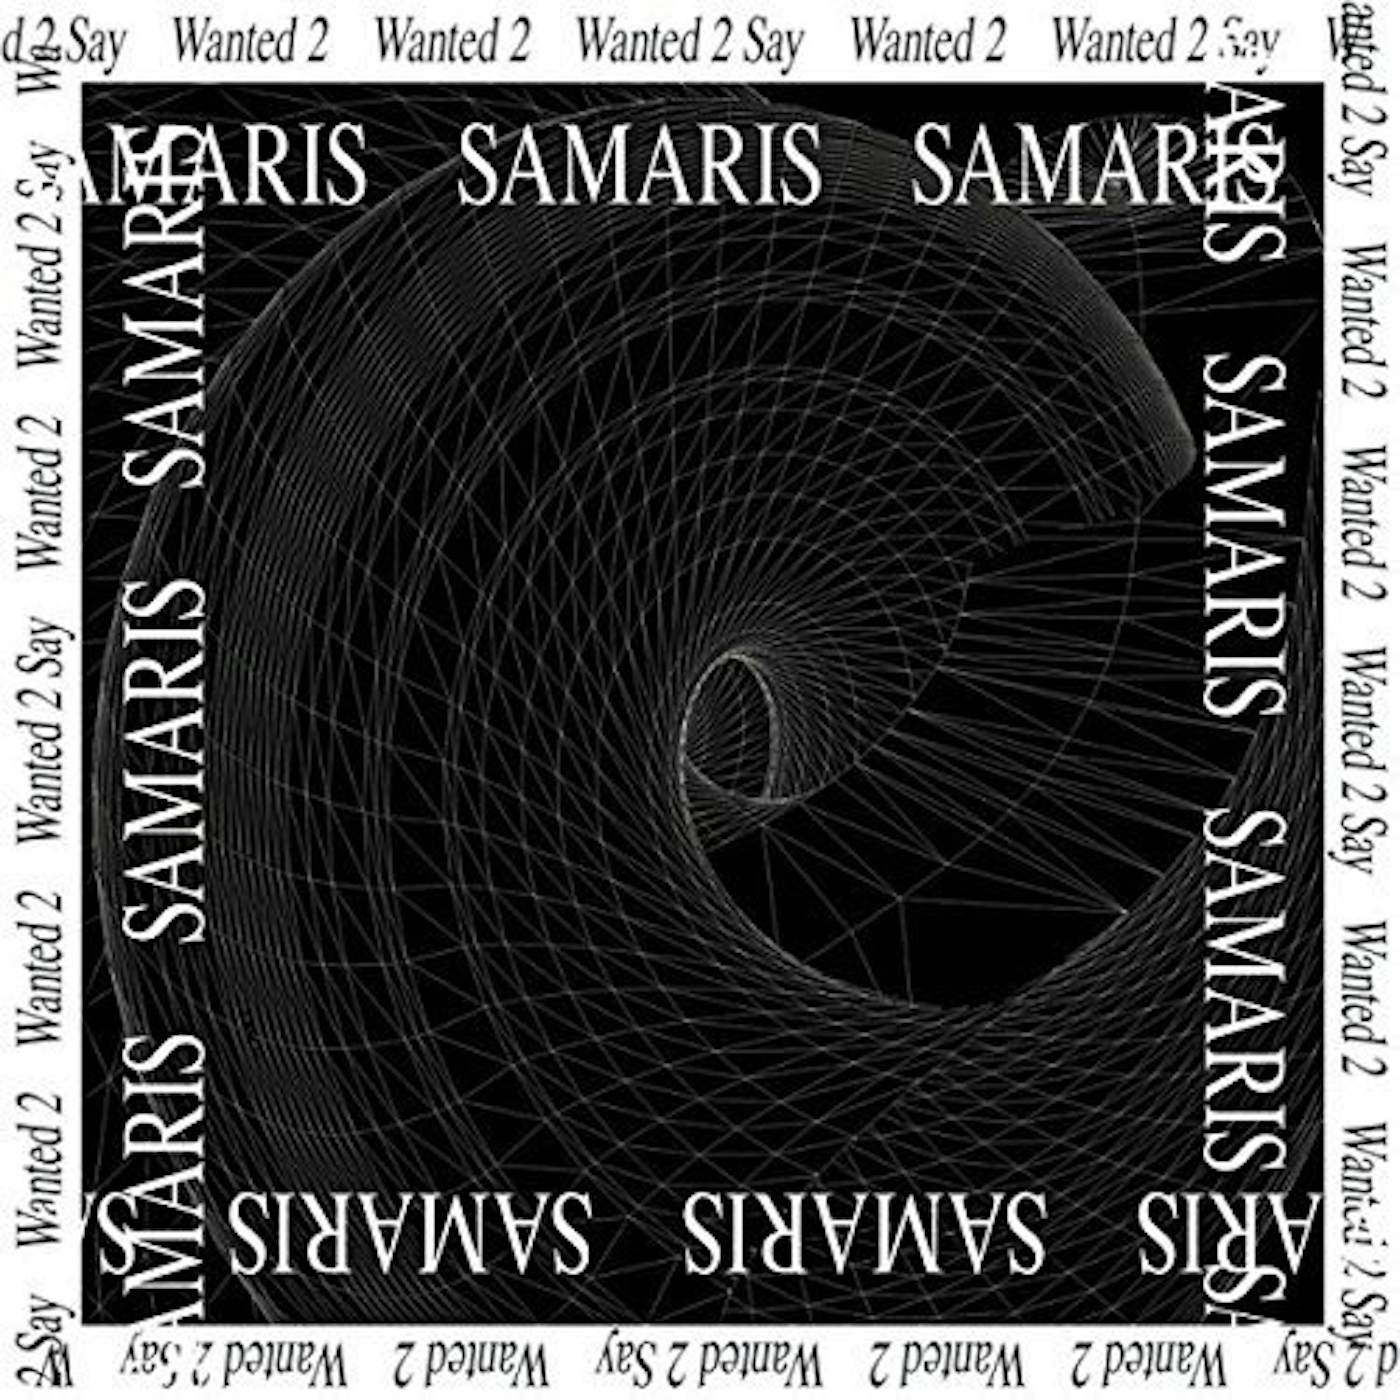 Samaris Wanted 2 Say Vinyl Record